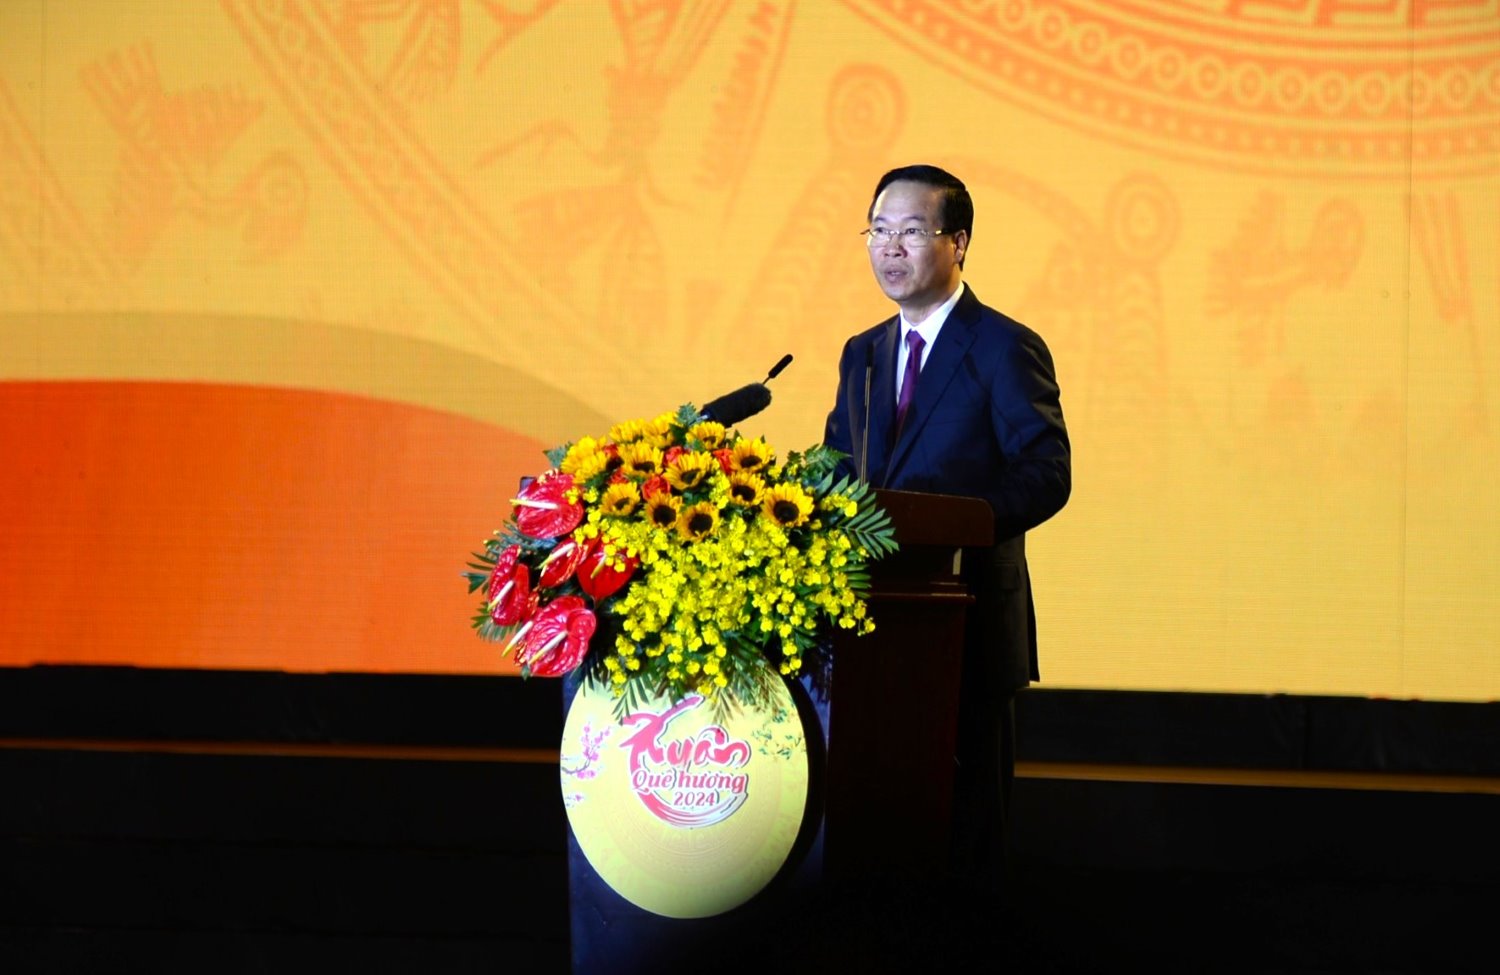 Chủ tịch nước Võ Văn Thưởng phát biểu tại chương trình Xuân Quê hương 2024 ở Hội trường Thống Nhất (TPHCM). Ảnh: Minh Quân